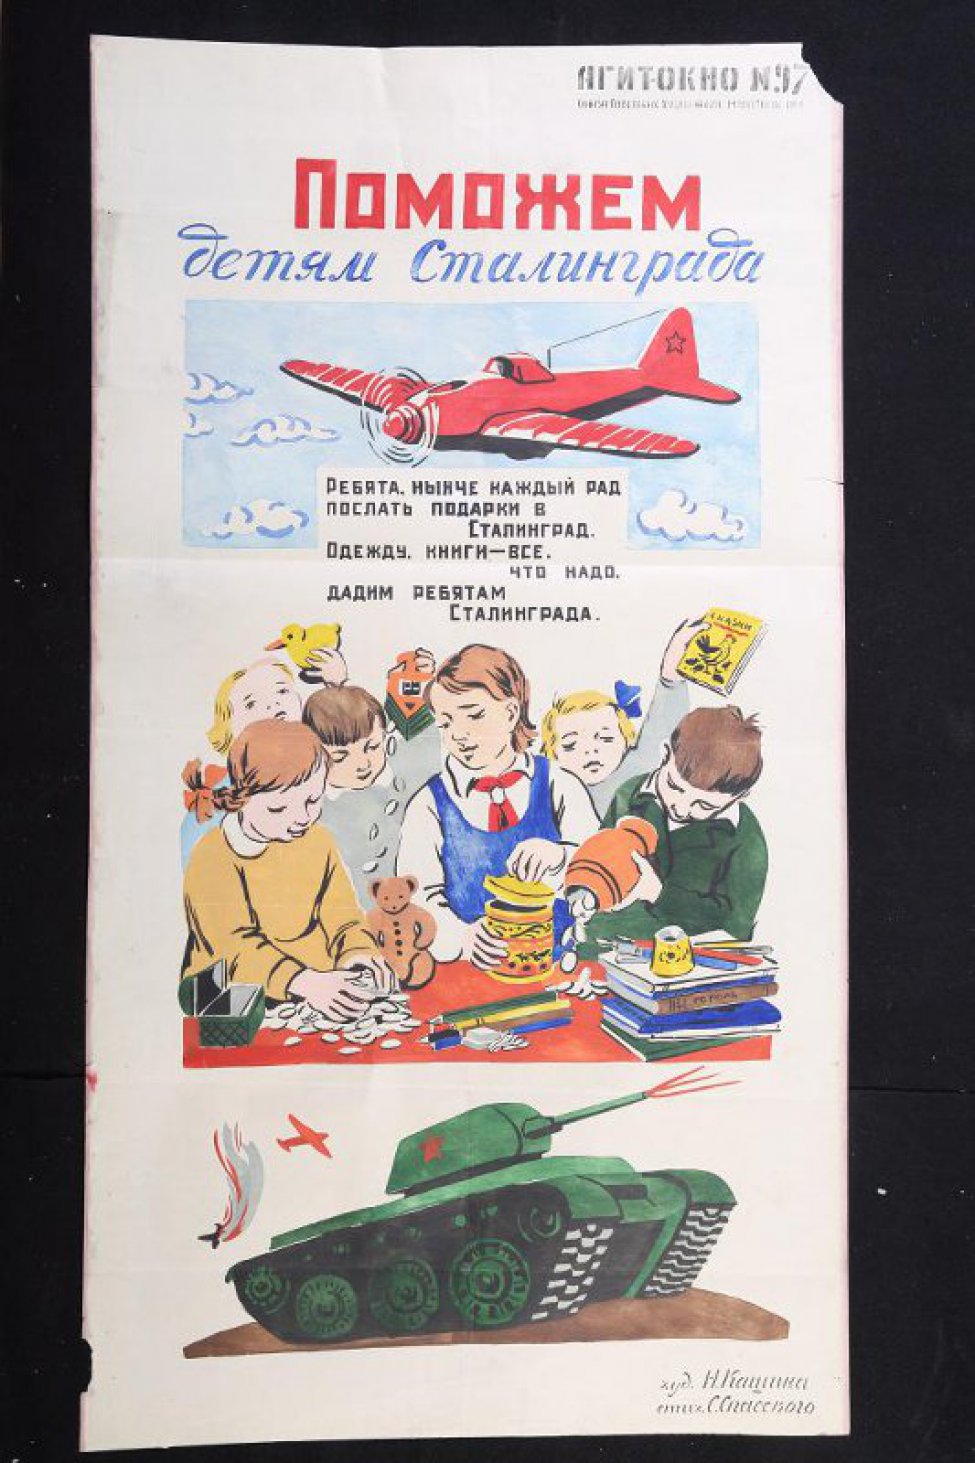 Изображено: наверху летит самолет, текст: "Ребята нынче каждый рад послать подарки в Сталинград..."; ниже: у стола ребята принесли игрушки, книги, деньги; ниже - советский танк.